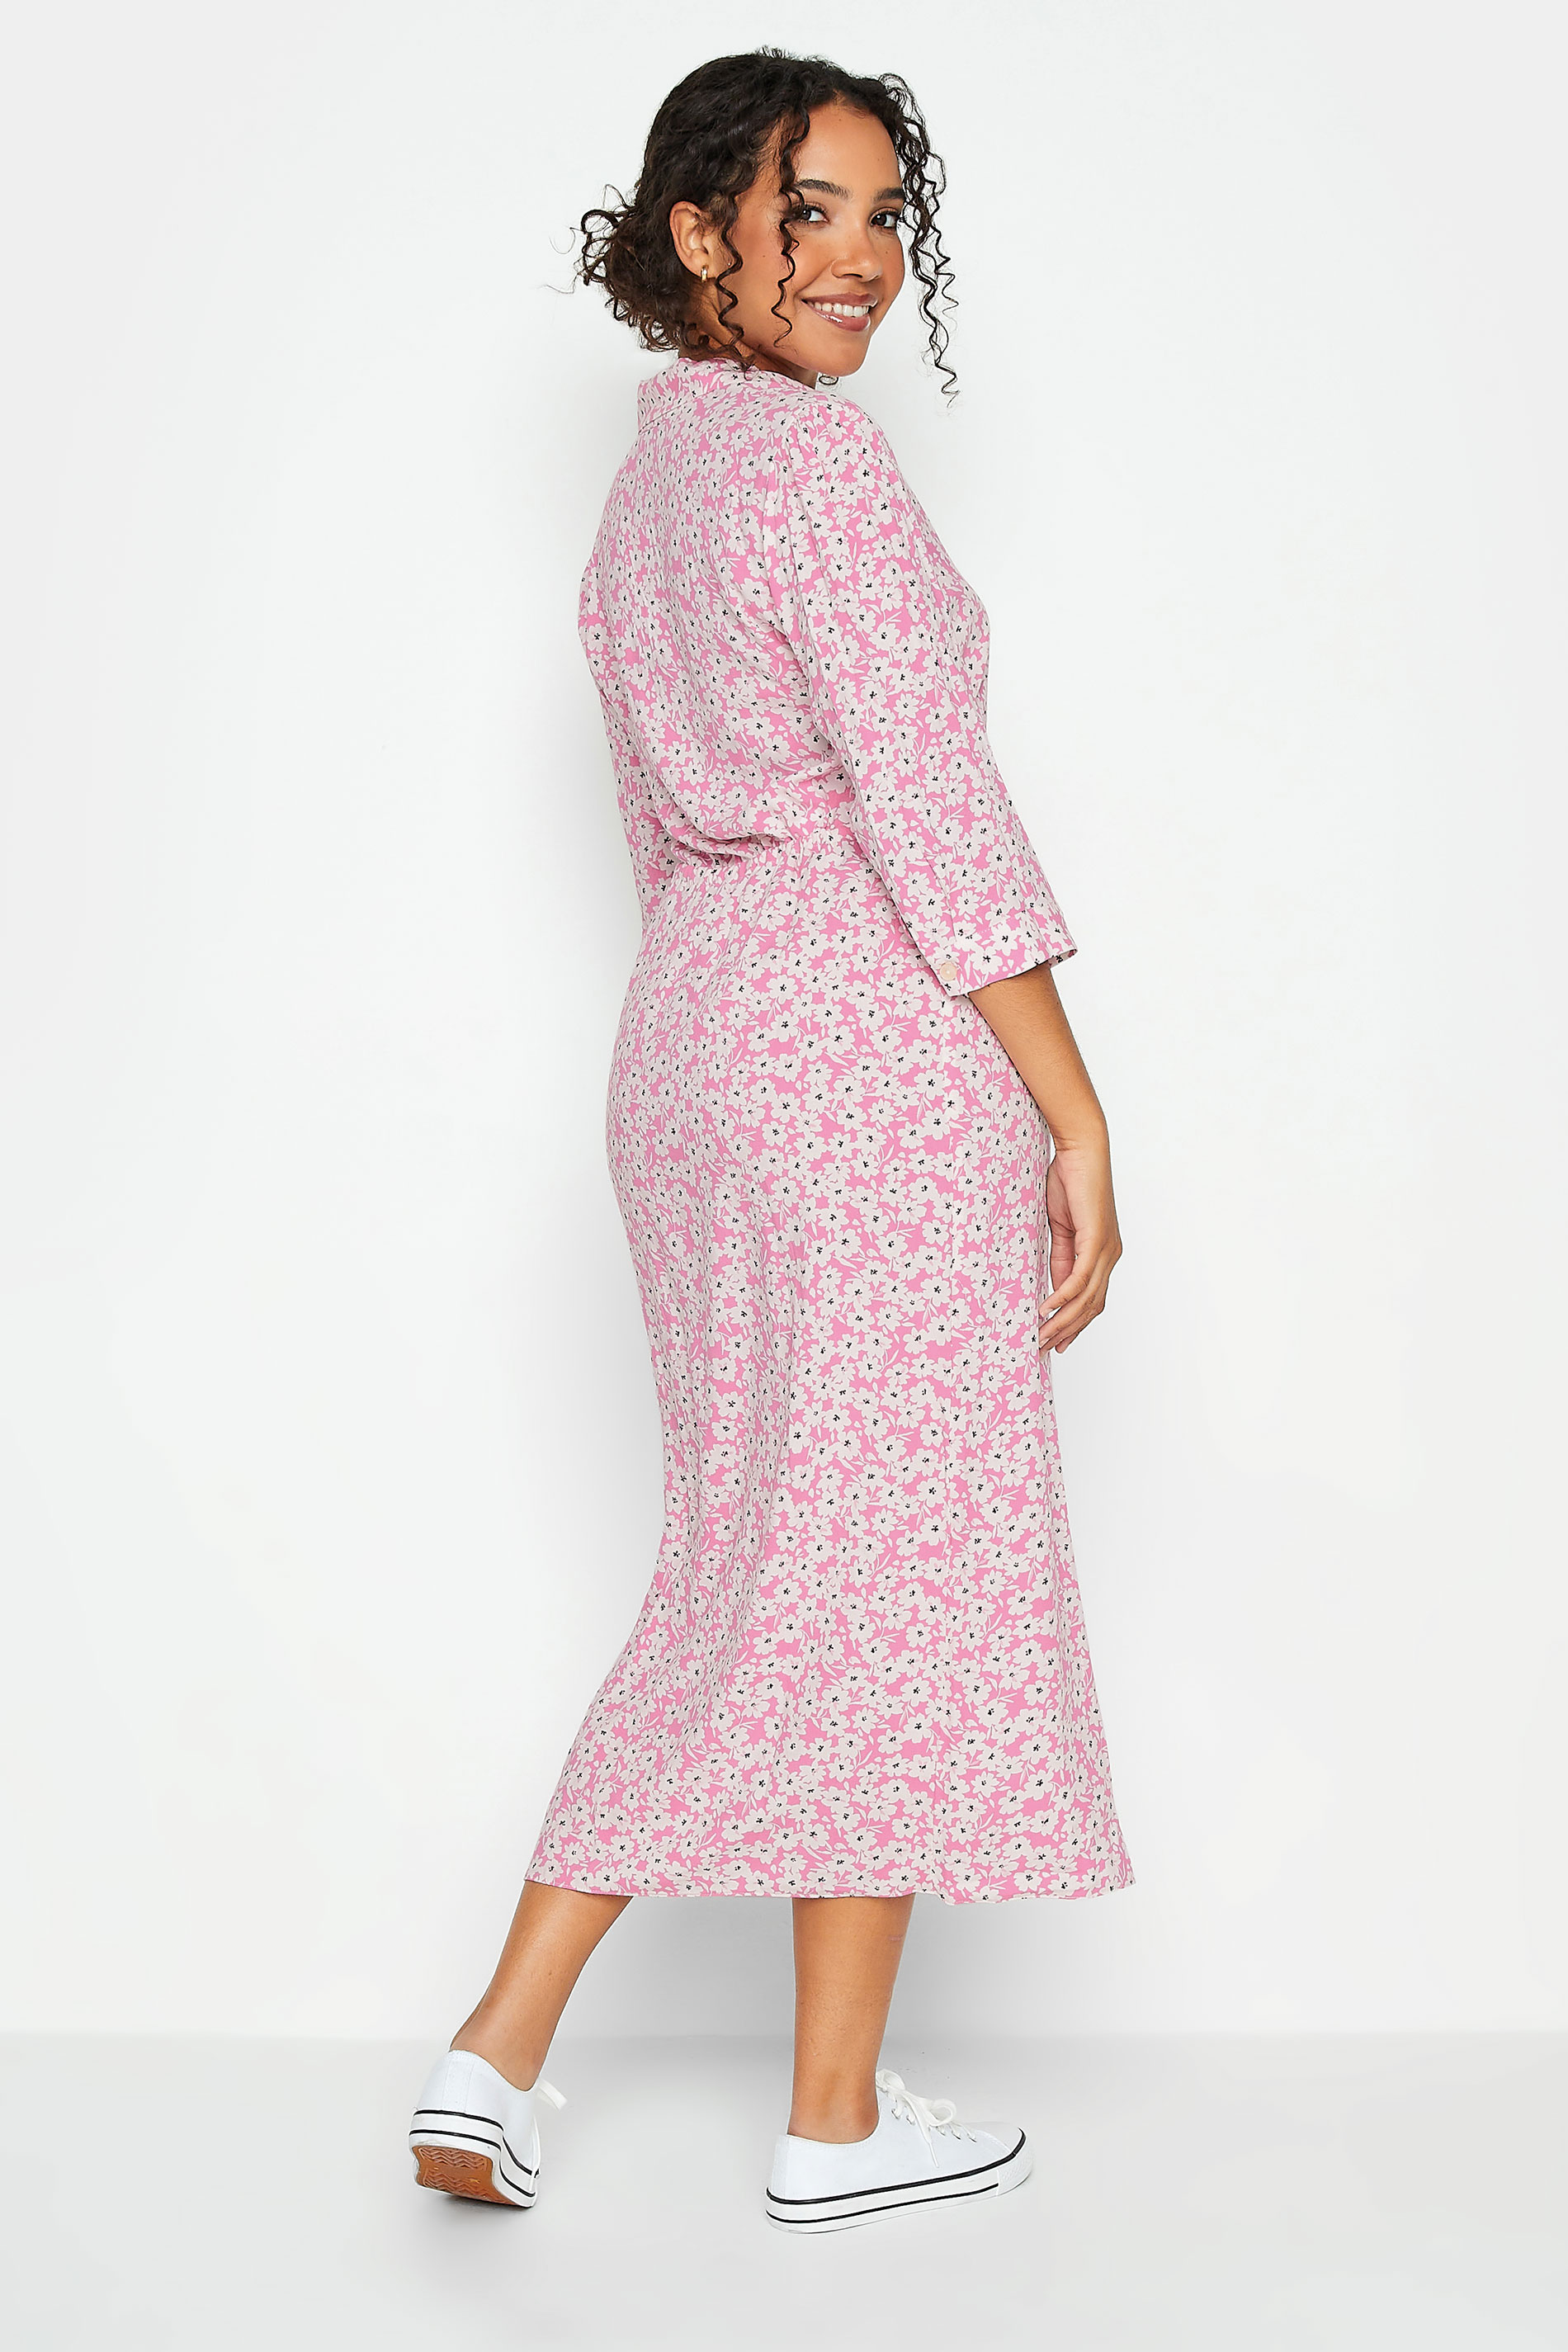 M&Co Women's Pink Floral Print Midi Shirt Dress | M&Co 3